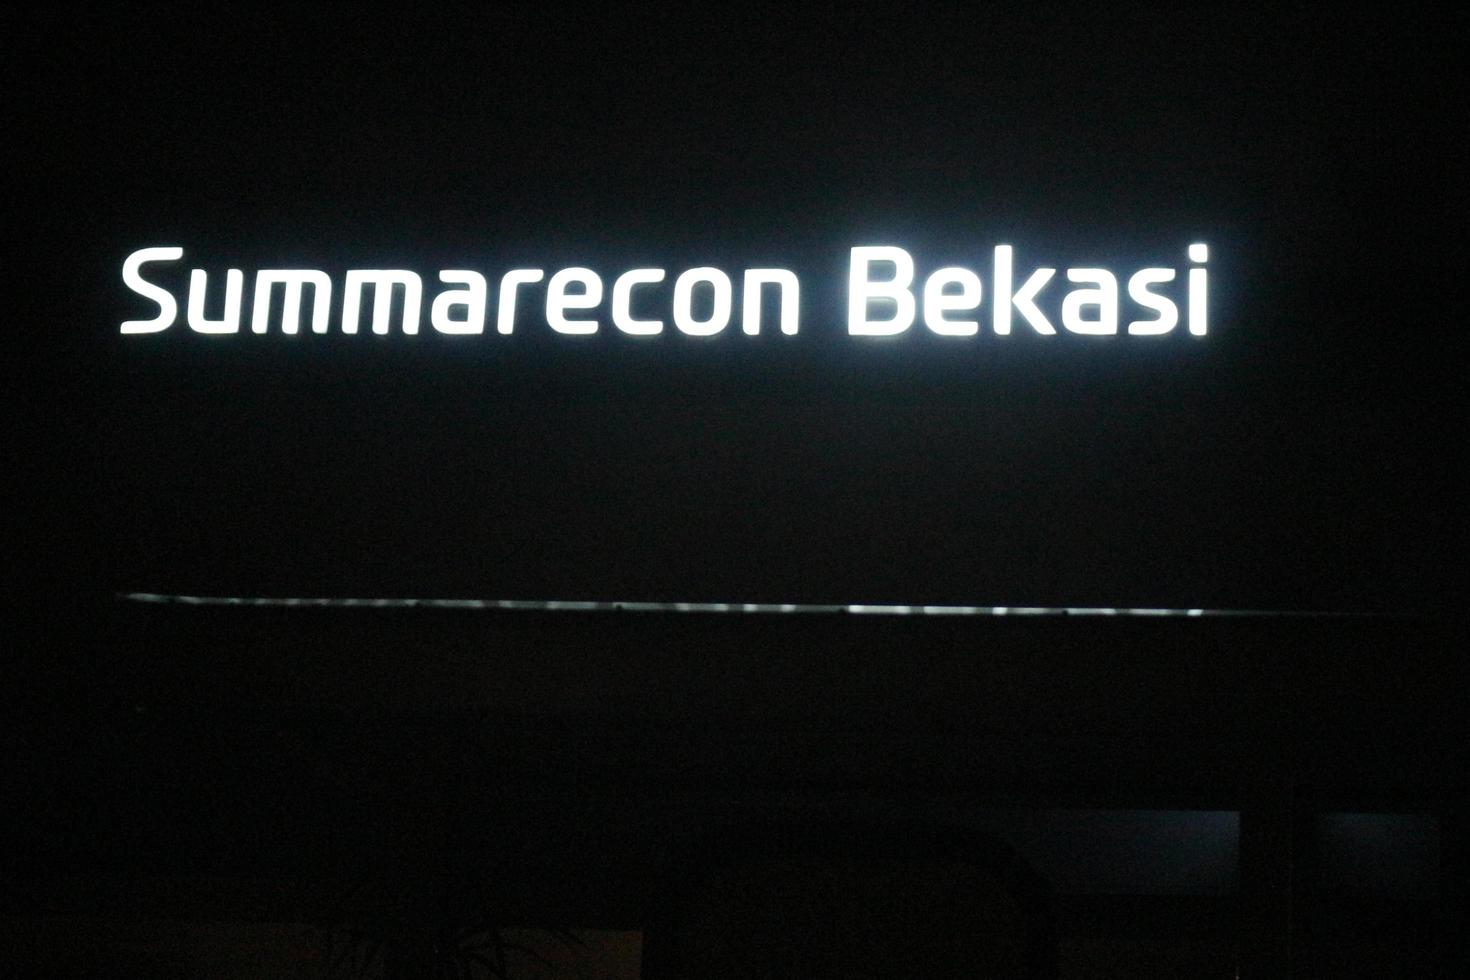 bekasi, indonesien i juli 2022. de summarecon bekasi logotyp lysande ljust på natt mot de mörk natt himmel. foto